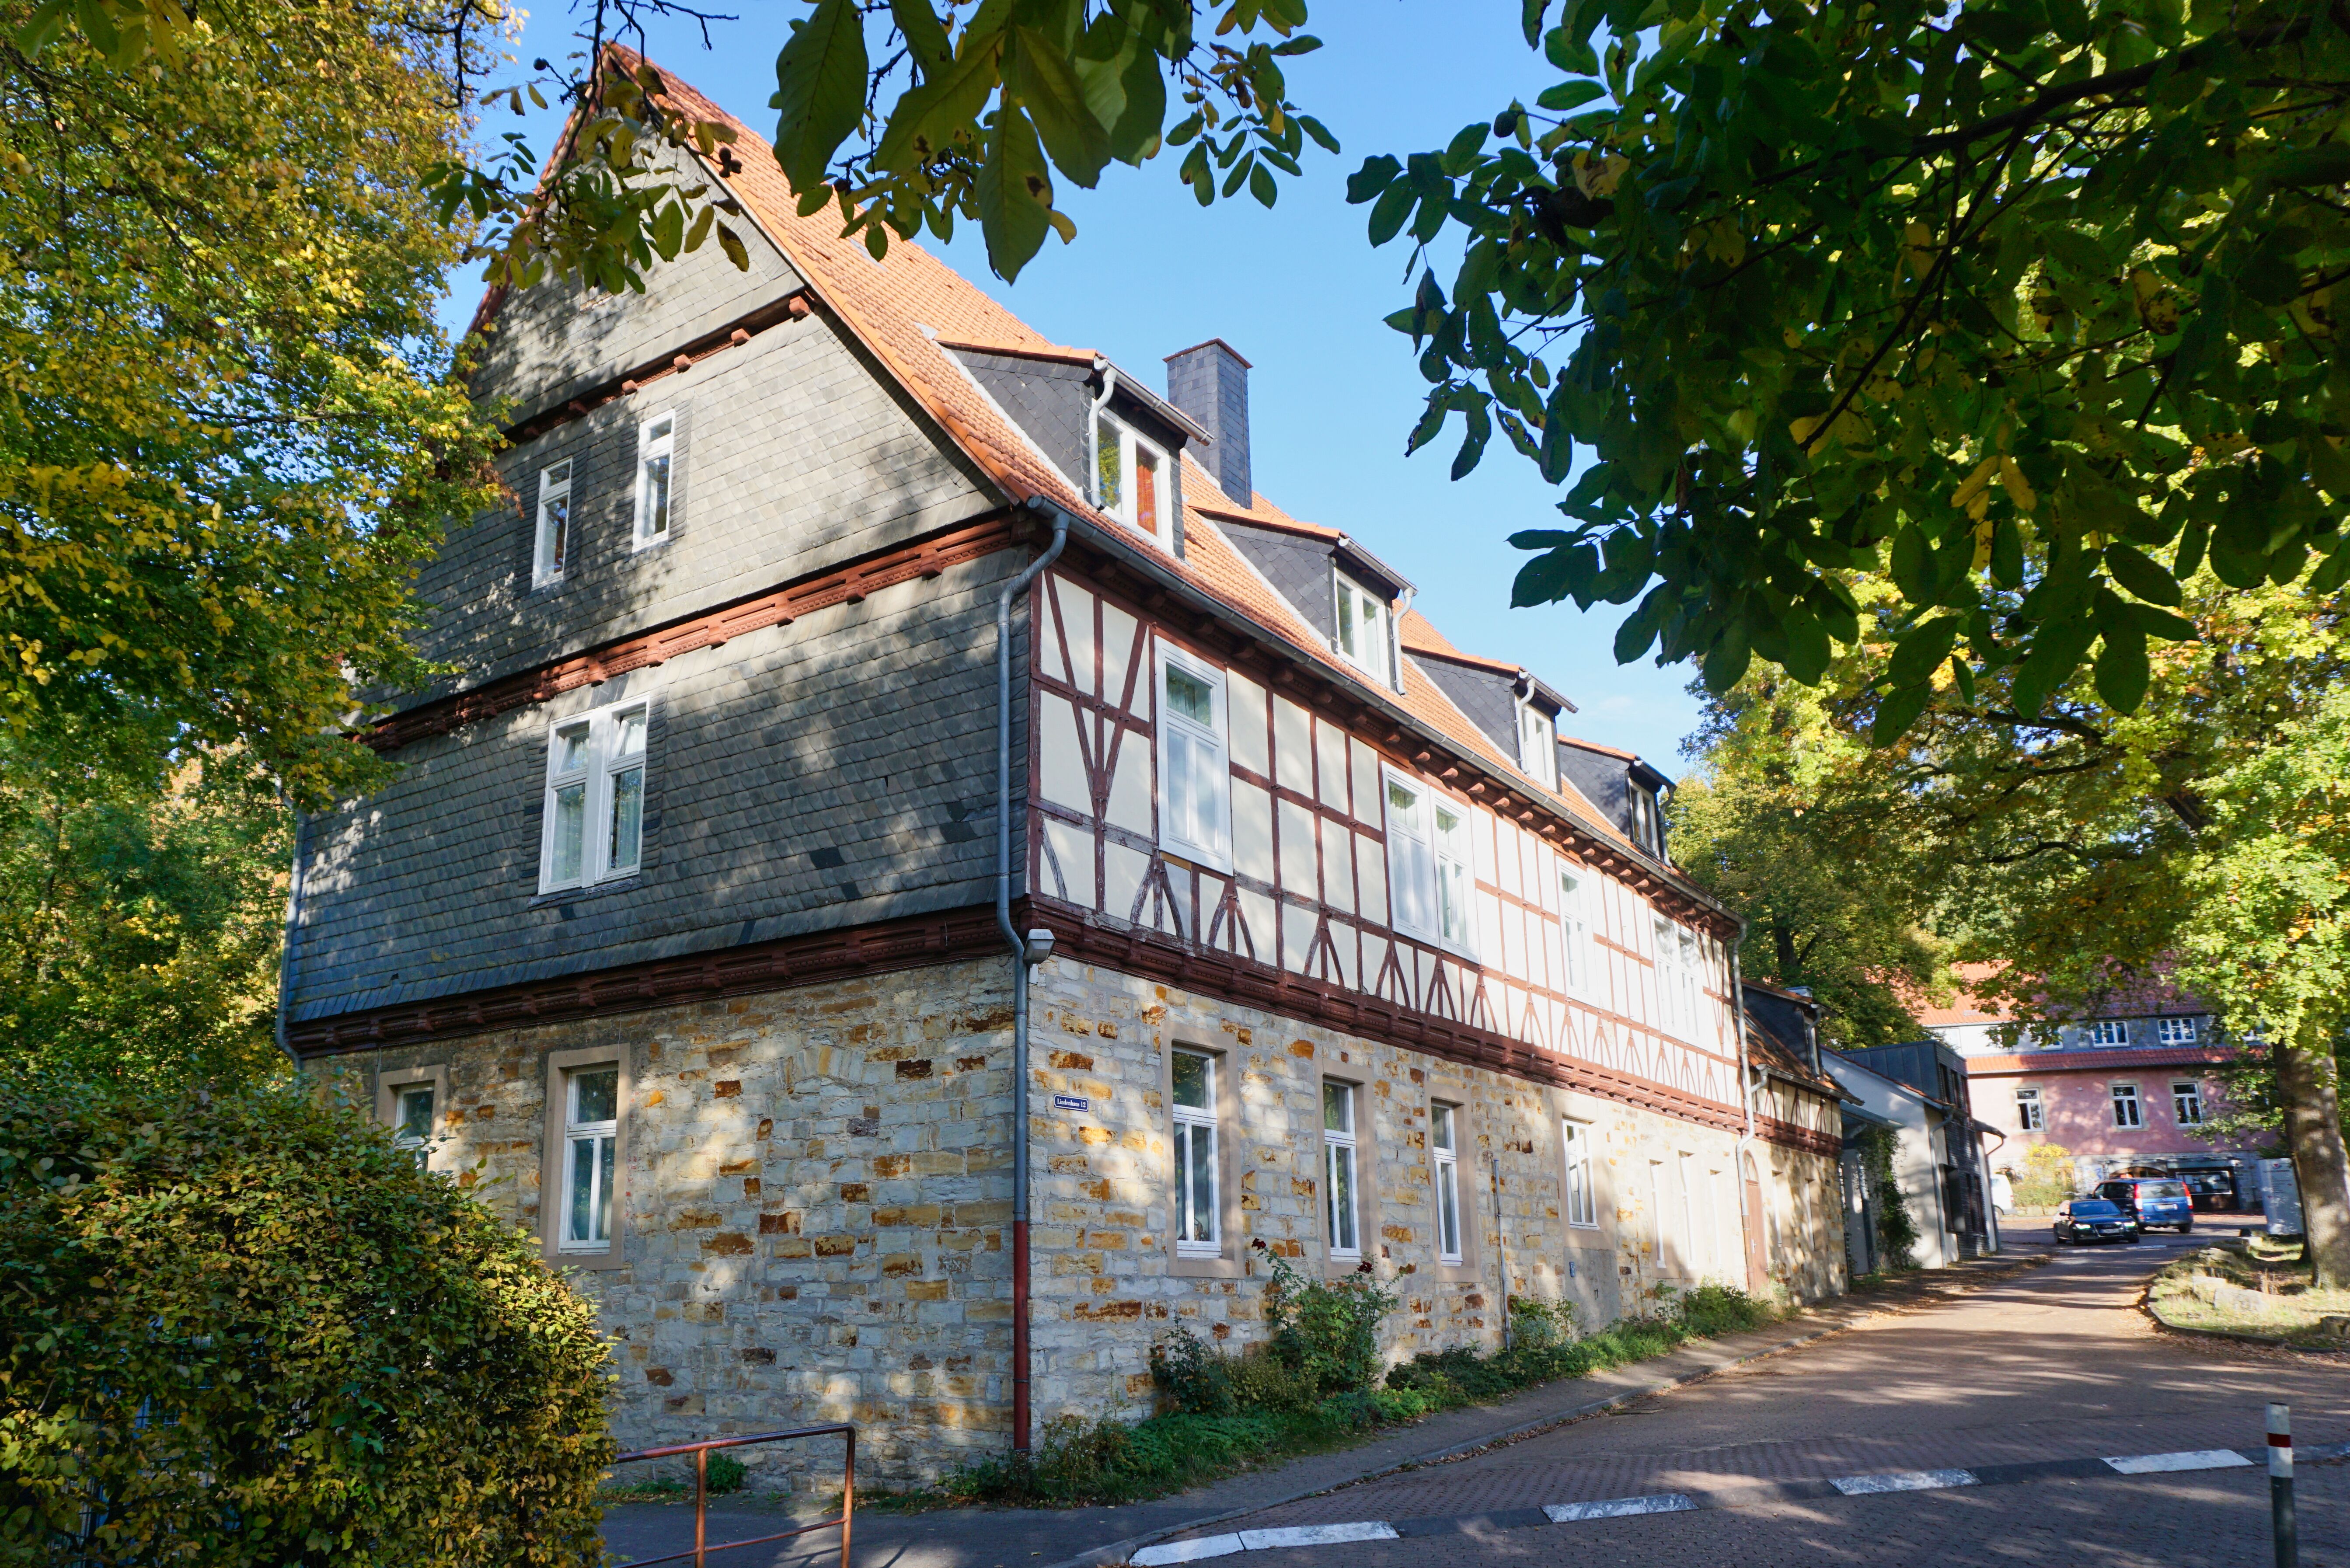 Lindenhaus am Schloss Hamborn, Borchen.